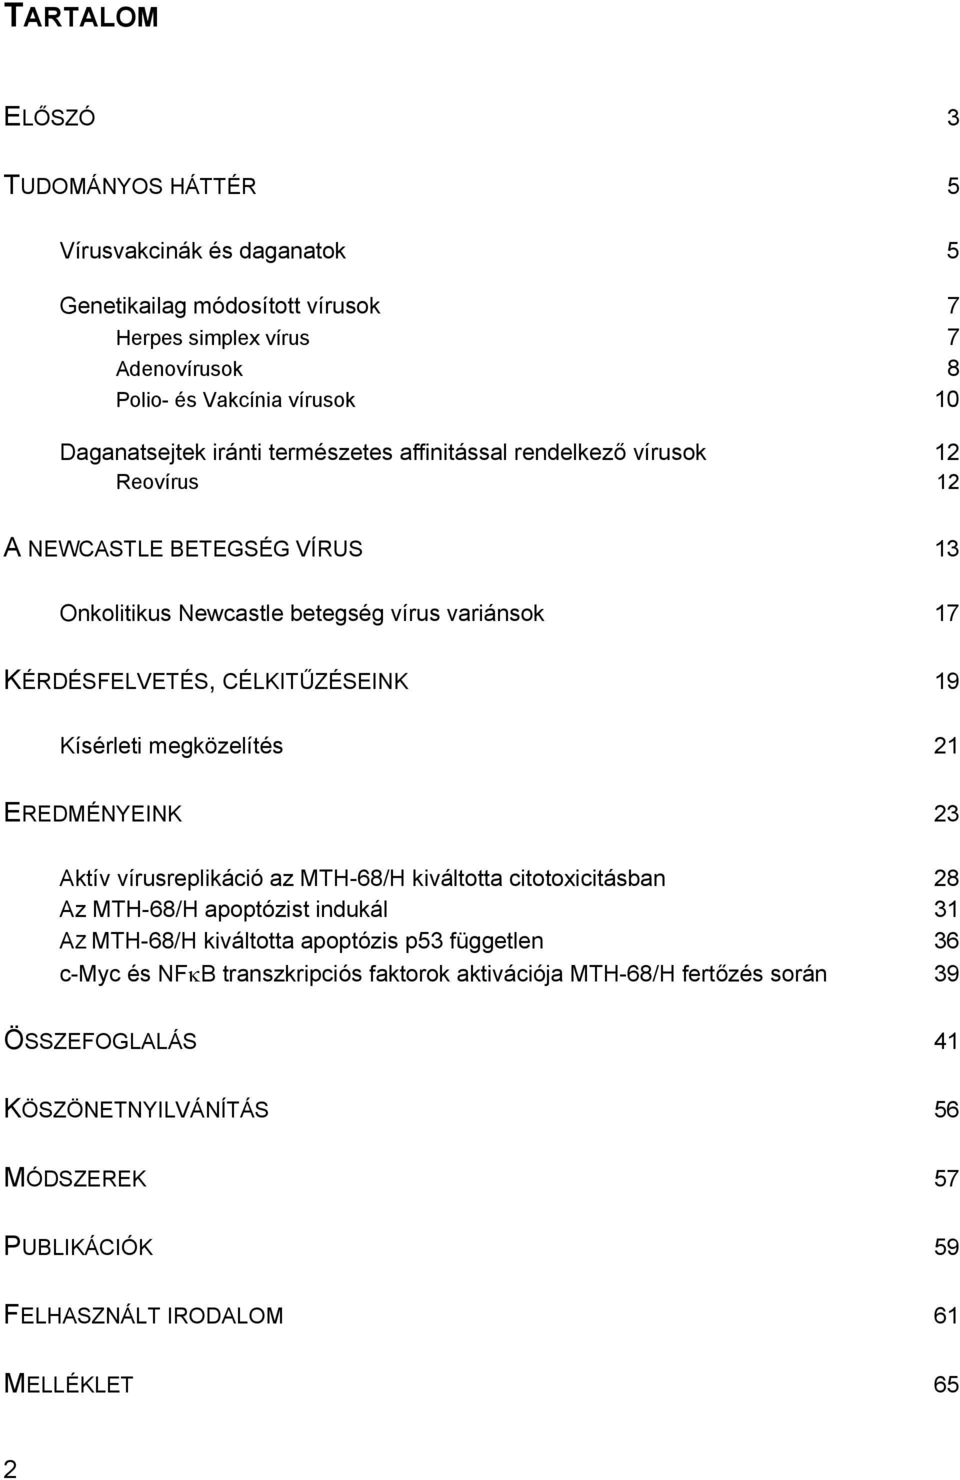 Kísérleti megközelítés 21 EREDMÉNYEINK 23 Aktív vírusreplikáció az MTH-68/H kiváltotta citotoxicitásban 28 Az MTH-68/H apoptózist indukál 31 AZ MTH-68/H kiváltotta apoptózis p53